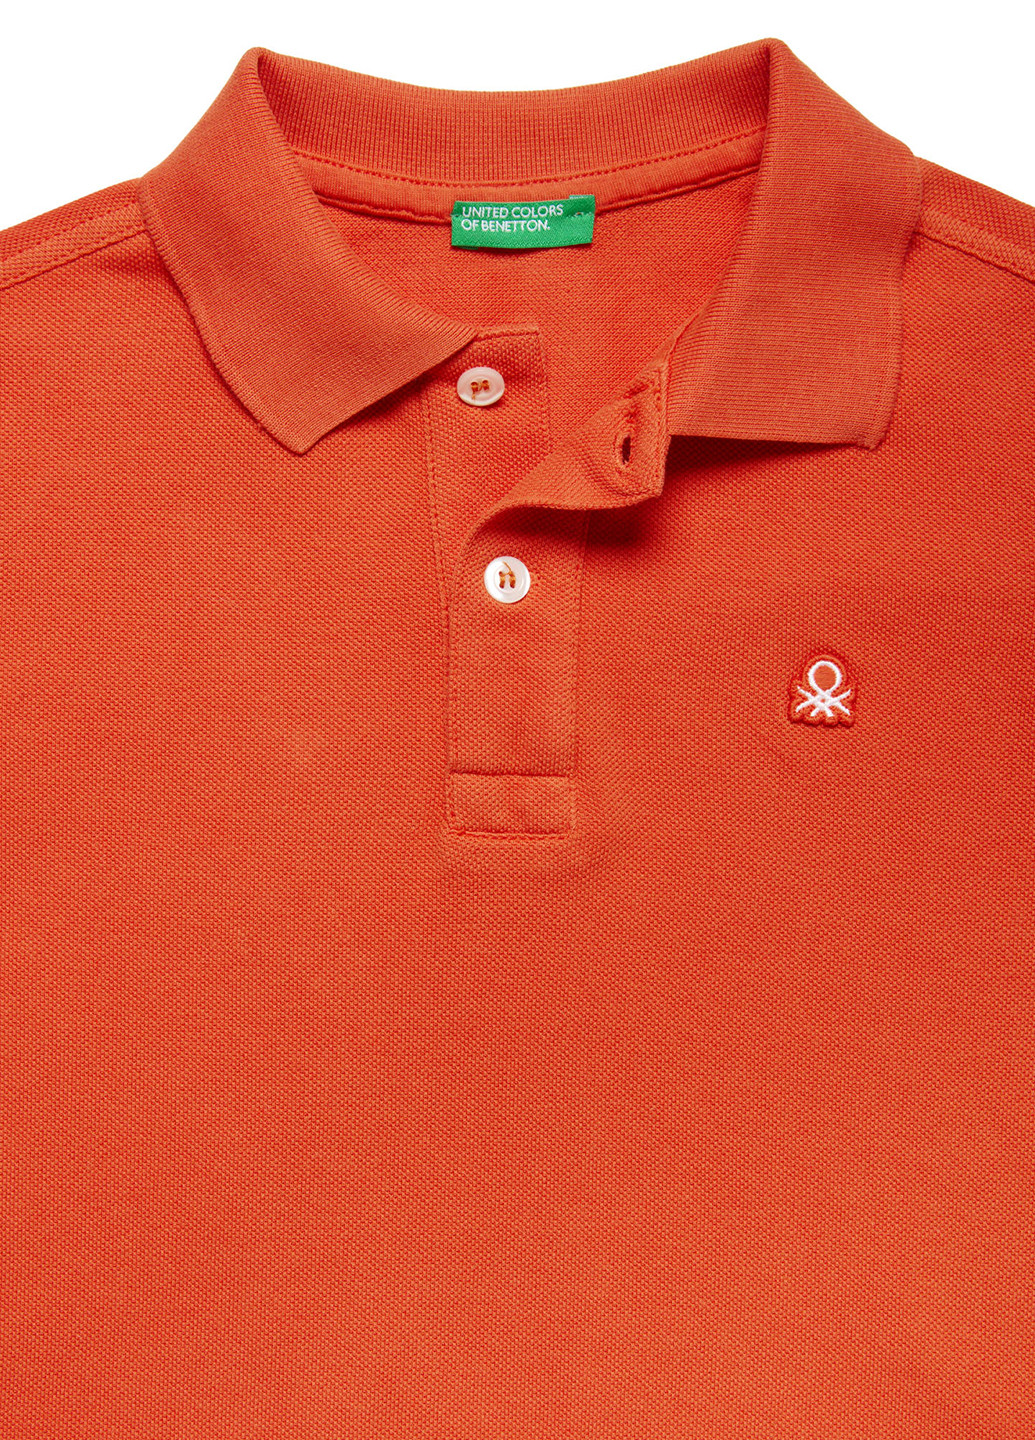 Оранжевая детская футболка-поло для мальчика United Colors of Benetton с логотипом